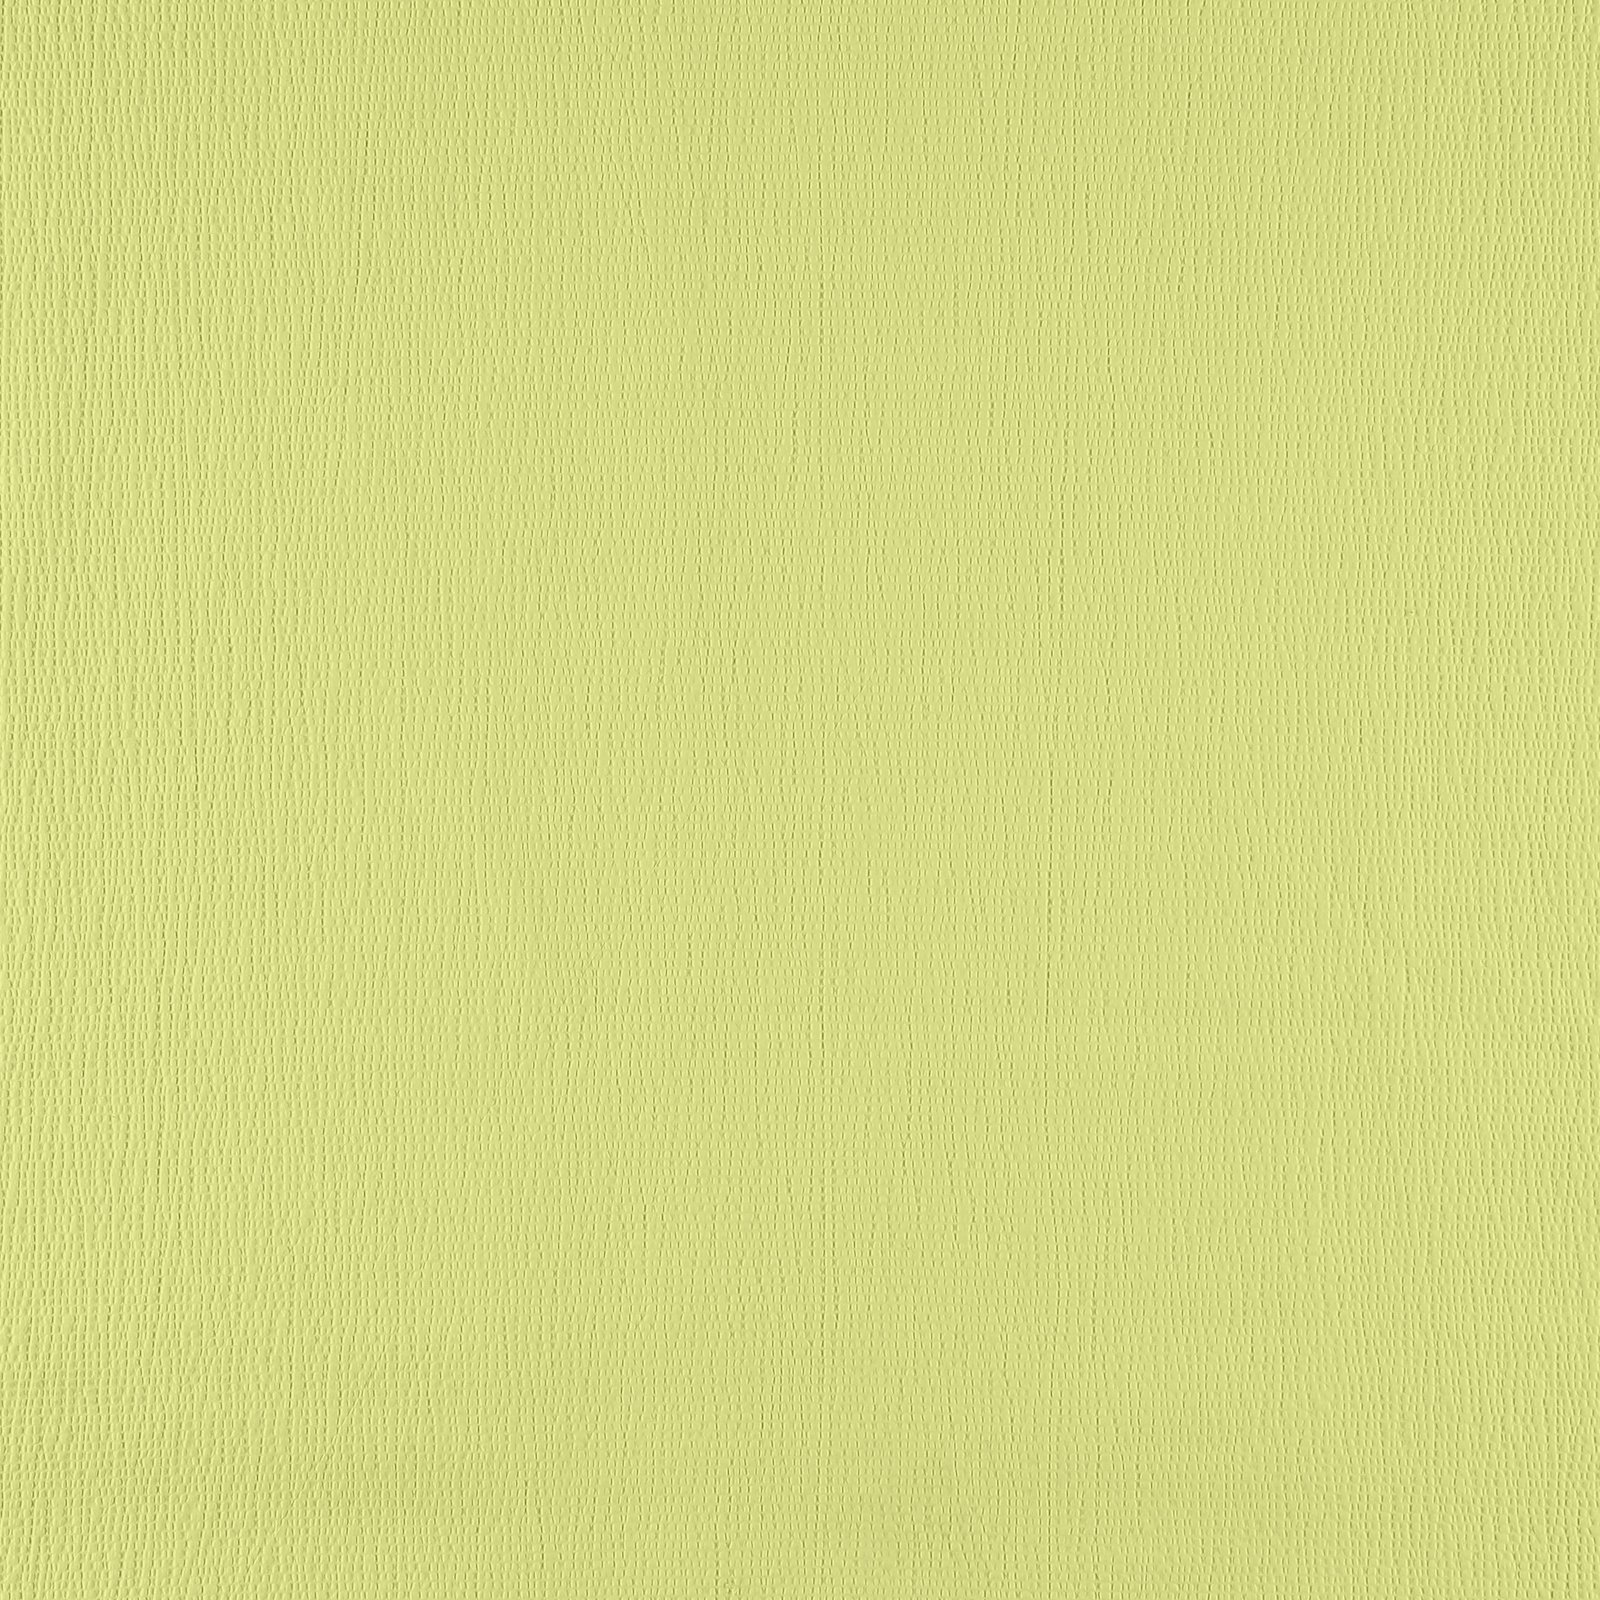 Vevet bomull m krepp effekt pastellgrønn 501959_pack_solid